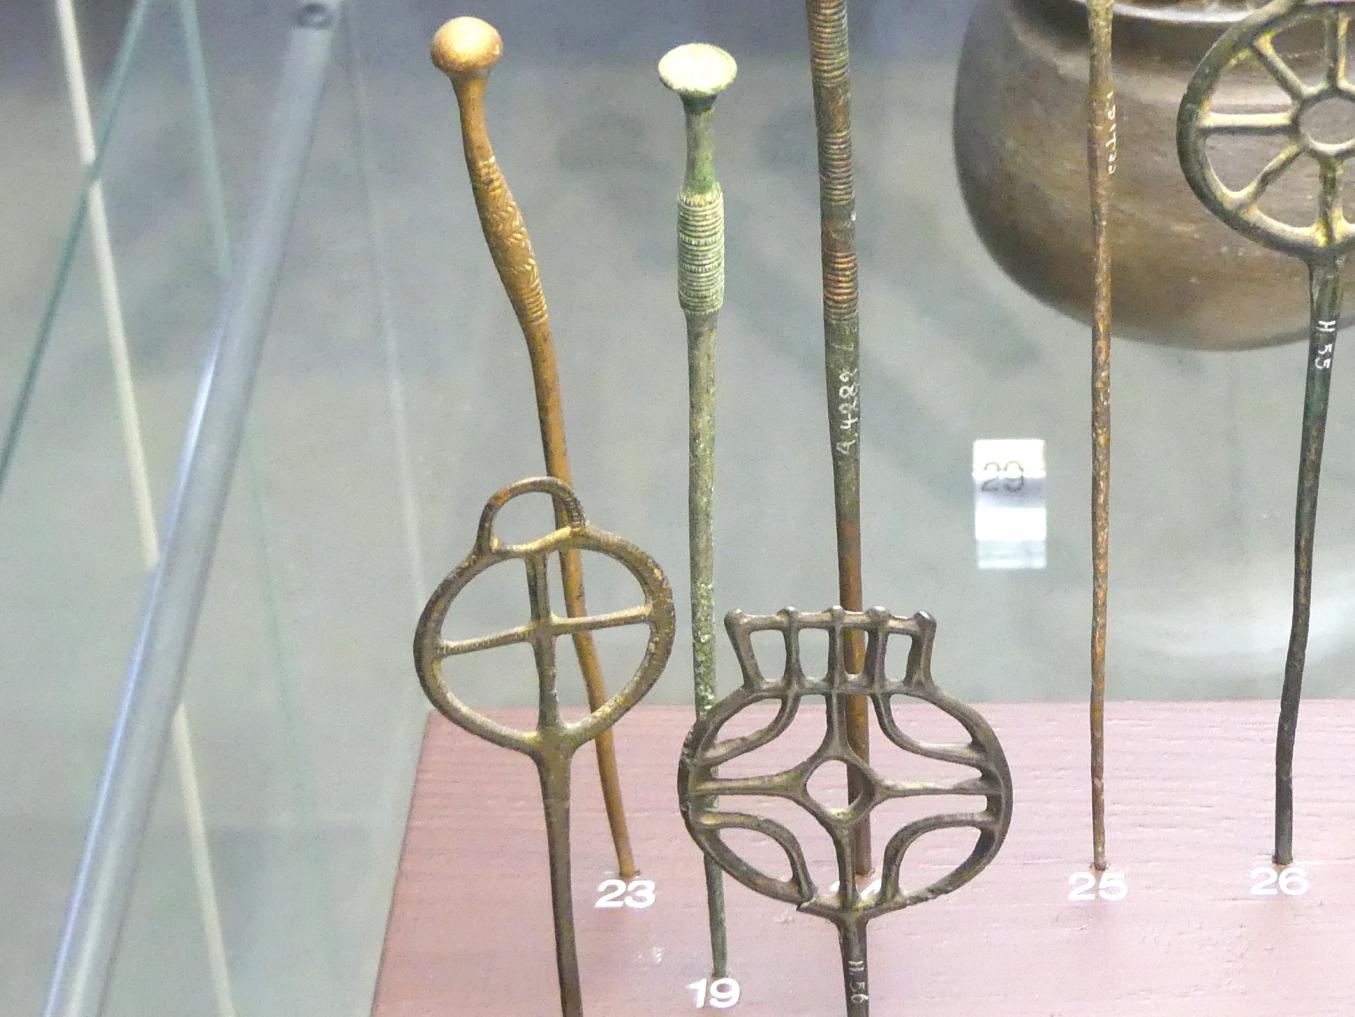 Trompetenkopfnadel, Mittlere Bronzezeit, 3000 - 1300 v. Chr., Späte (Jüngere) Bronzezeit, 1500 - 700 v. Chr., Bild 1/2